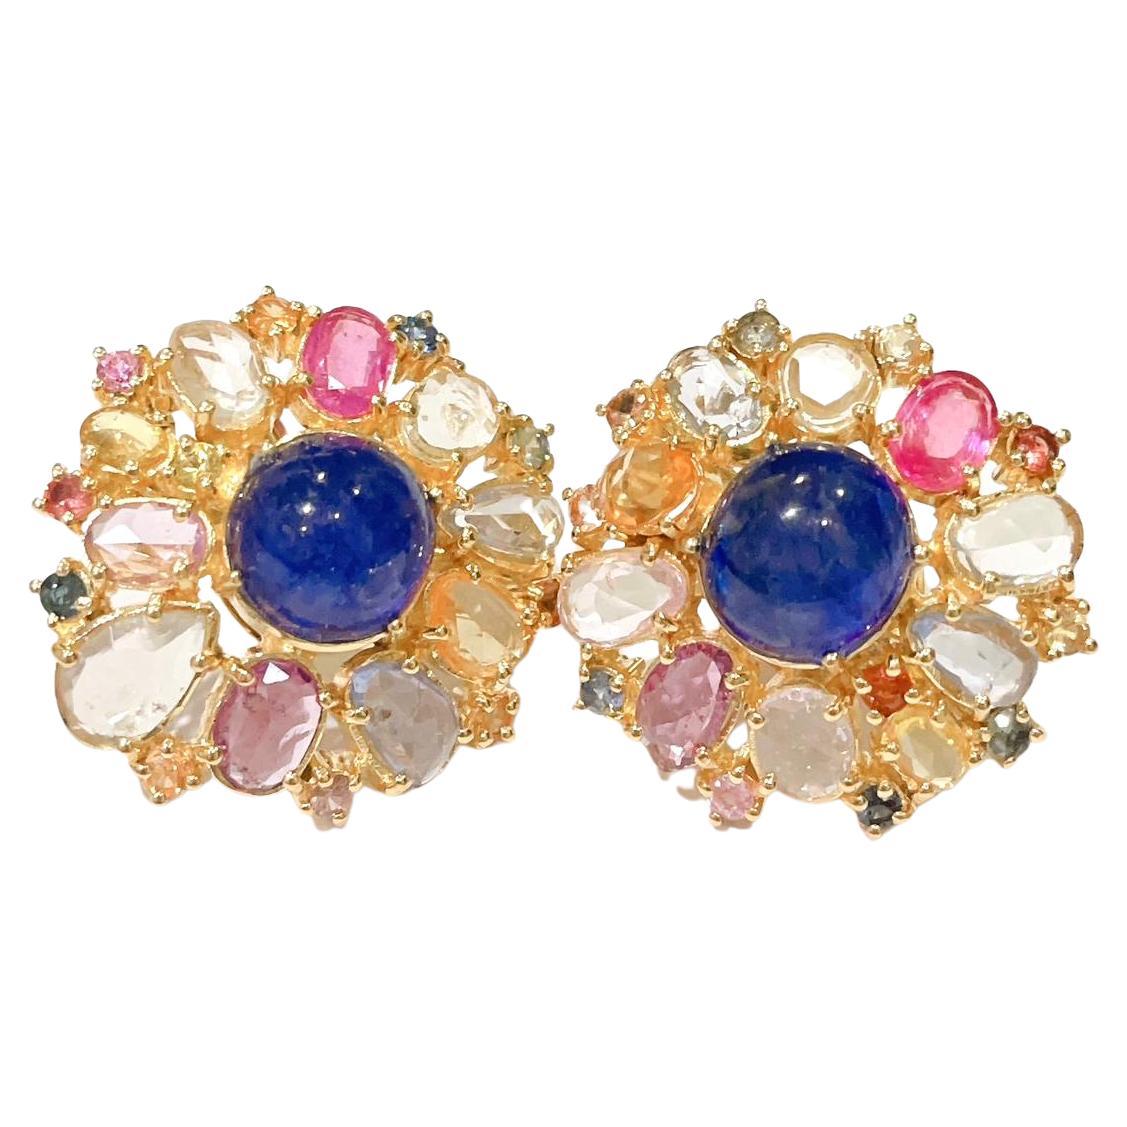 Bochic “Capri” Ruby & Rose Cut Sapphire Earrings Set in 18k Gold & Silver For Sale